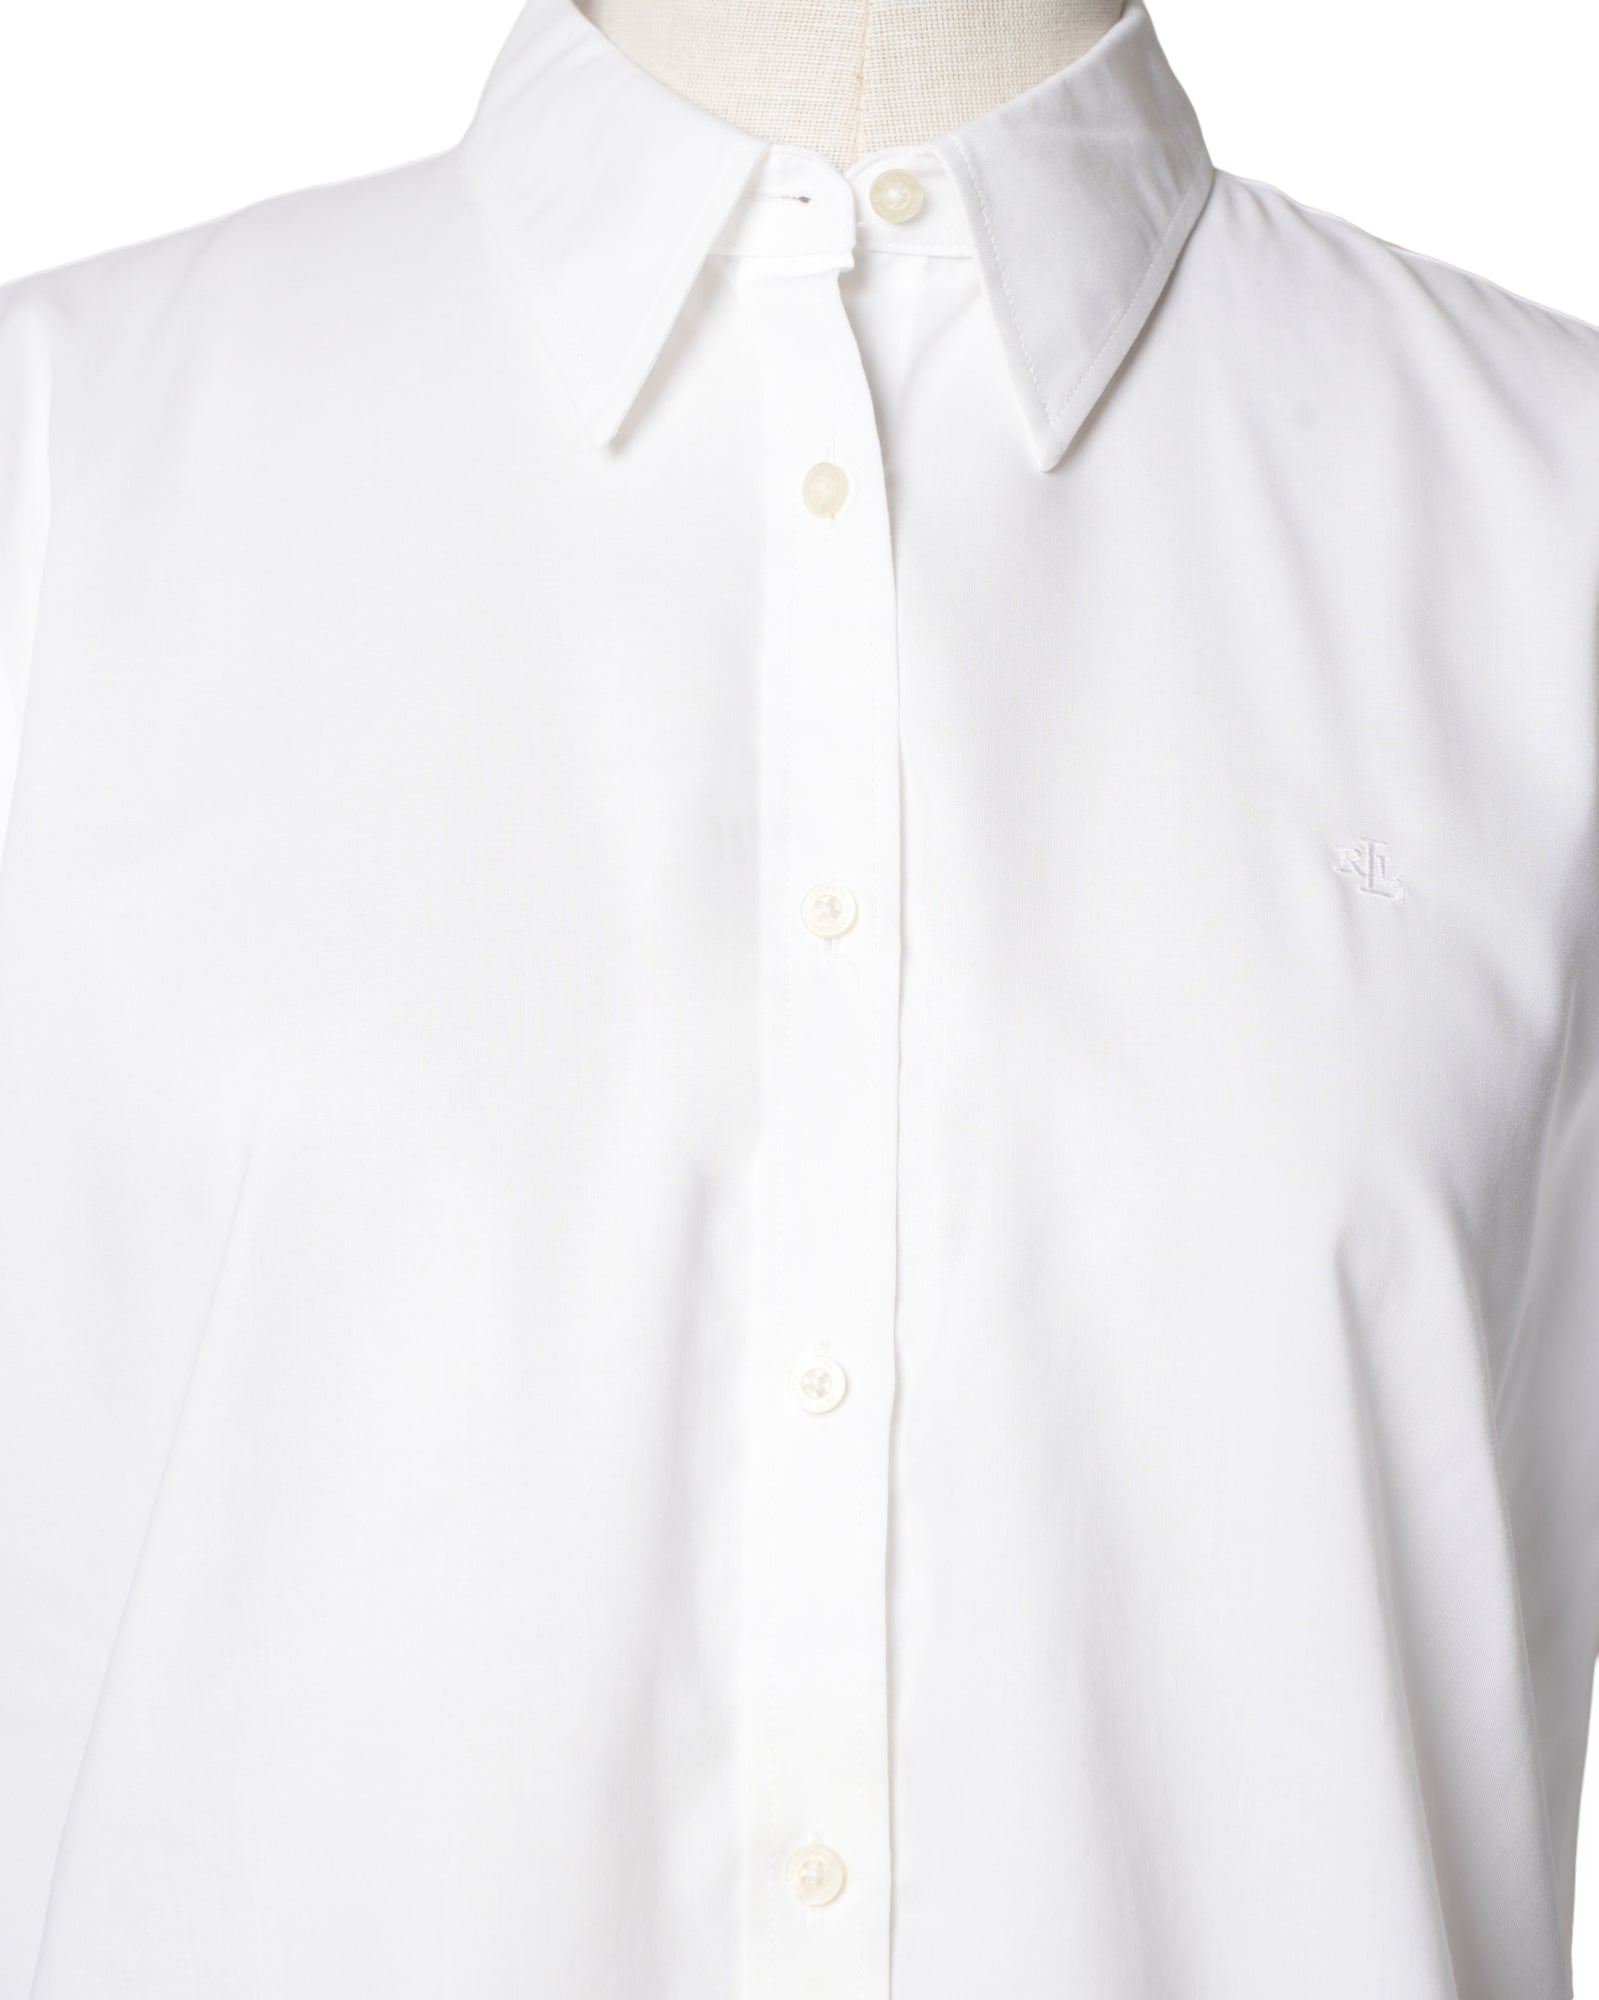 Ralph Lauren White Shirt Full Sleeves